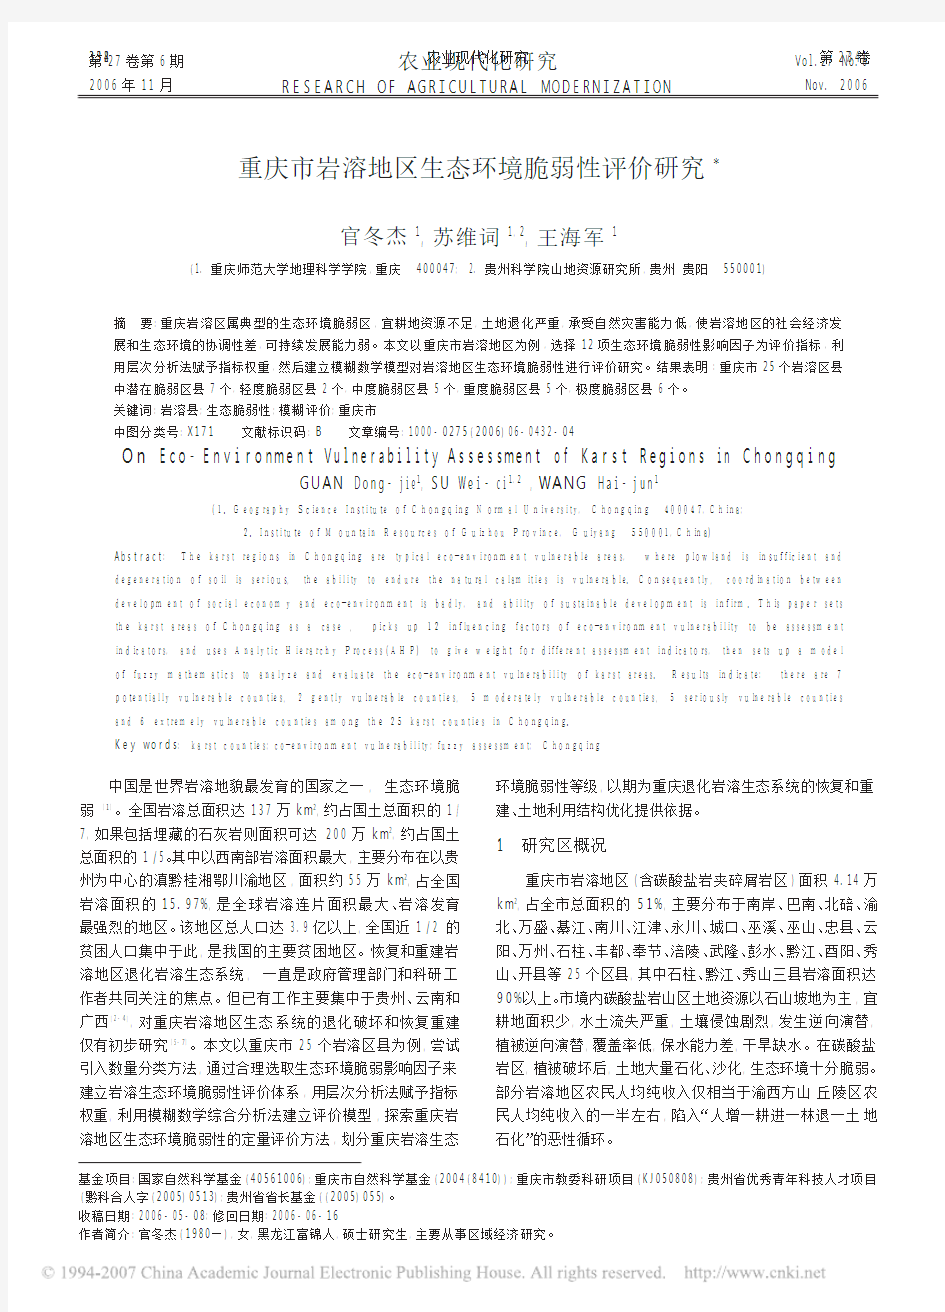 重庆市岩溶地区生态环境脆弱性评价研究